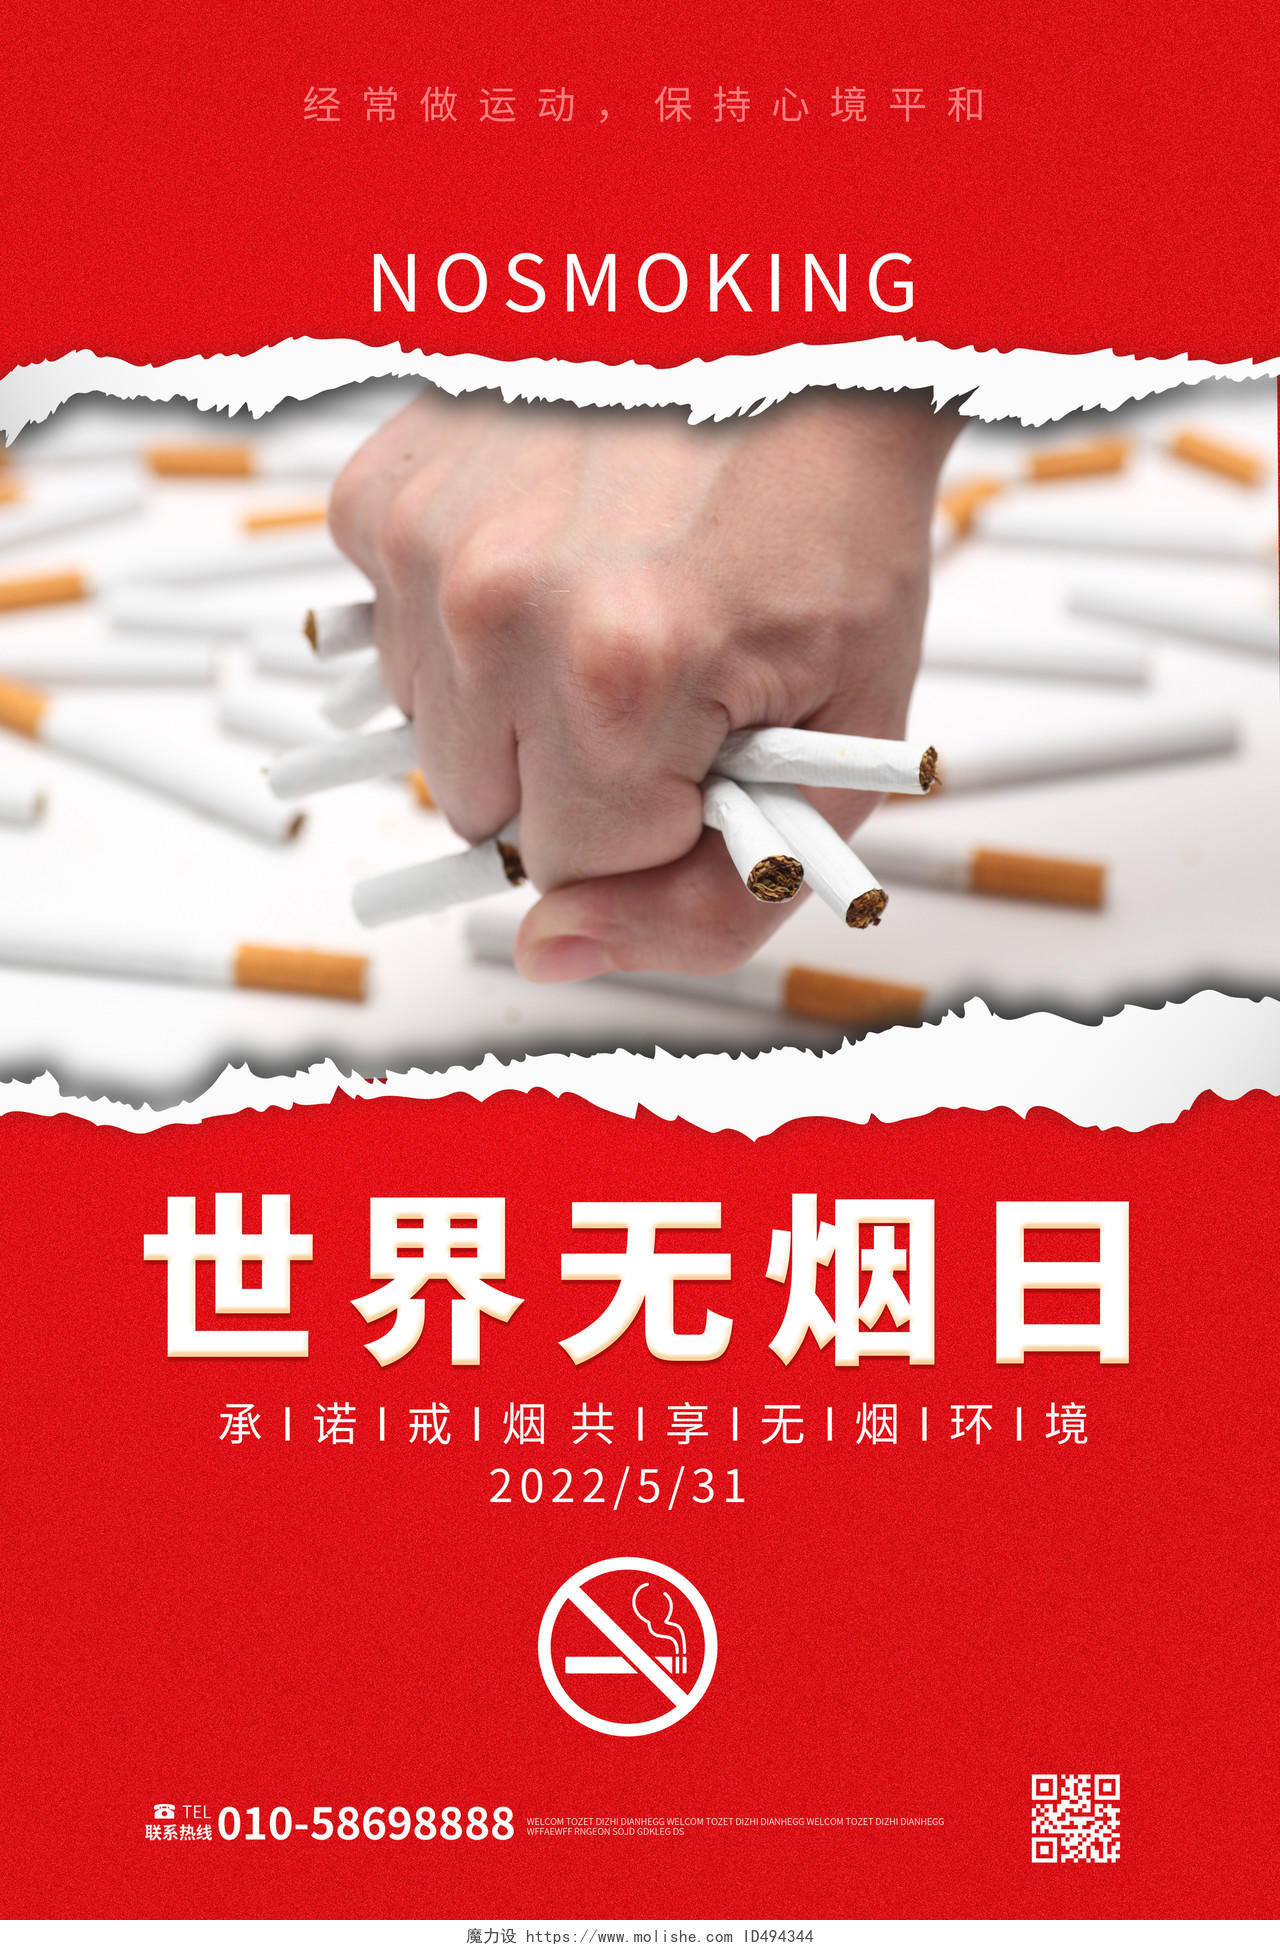 红色背景创意摄影风格世界无烟日宣传海报设计世界无烟日海报节日